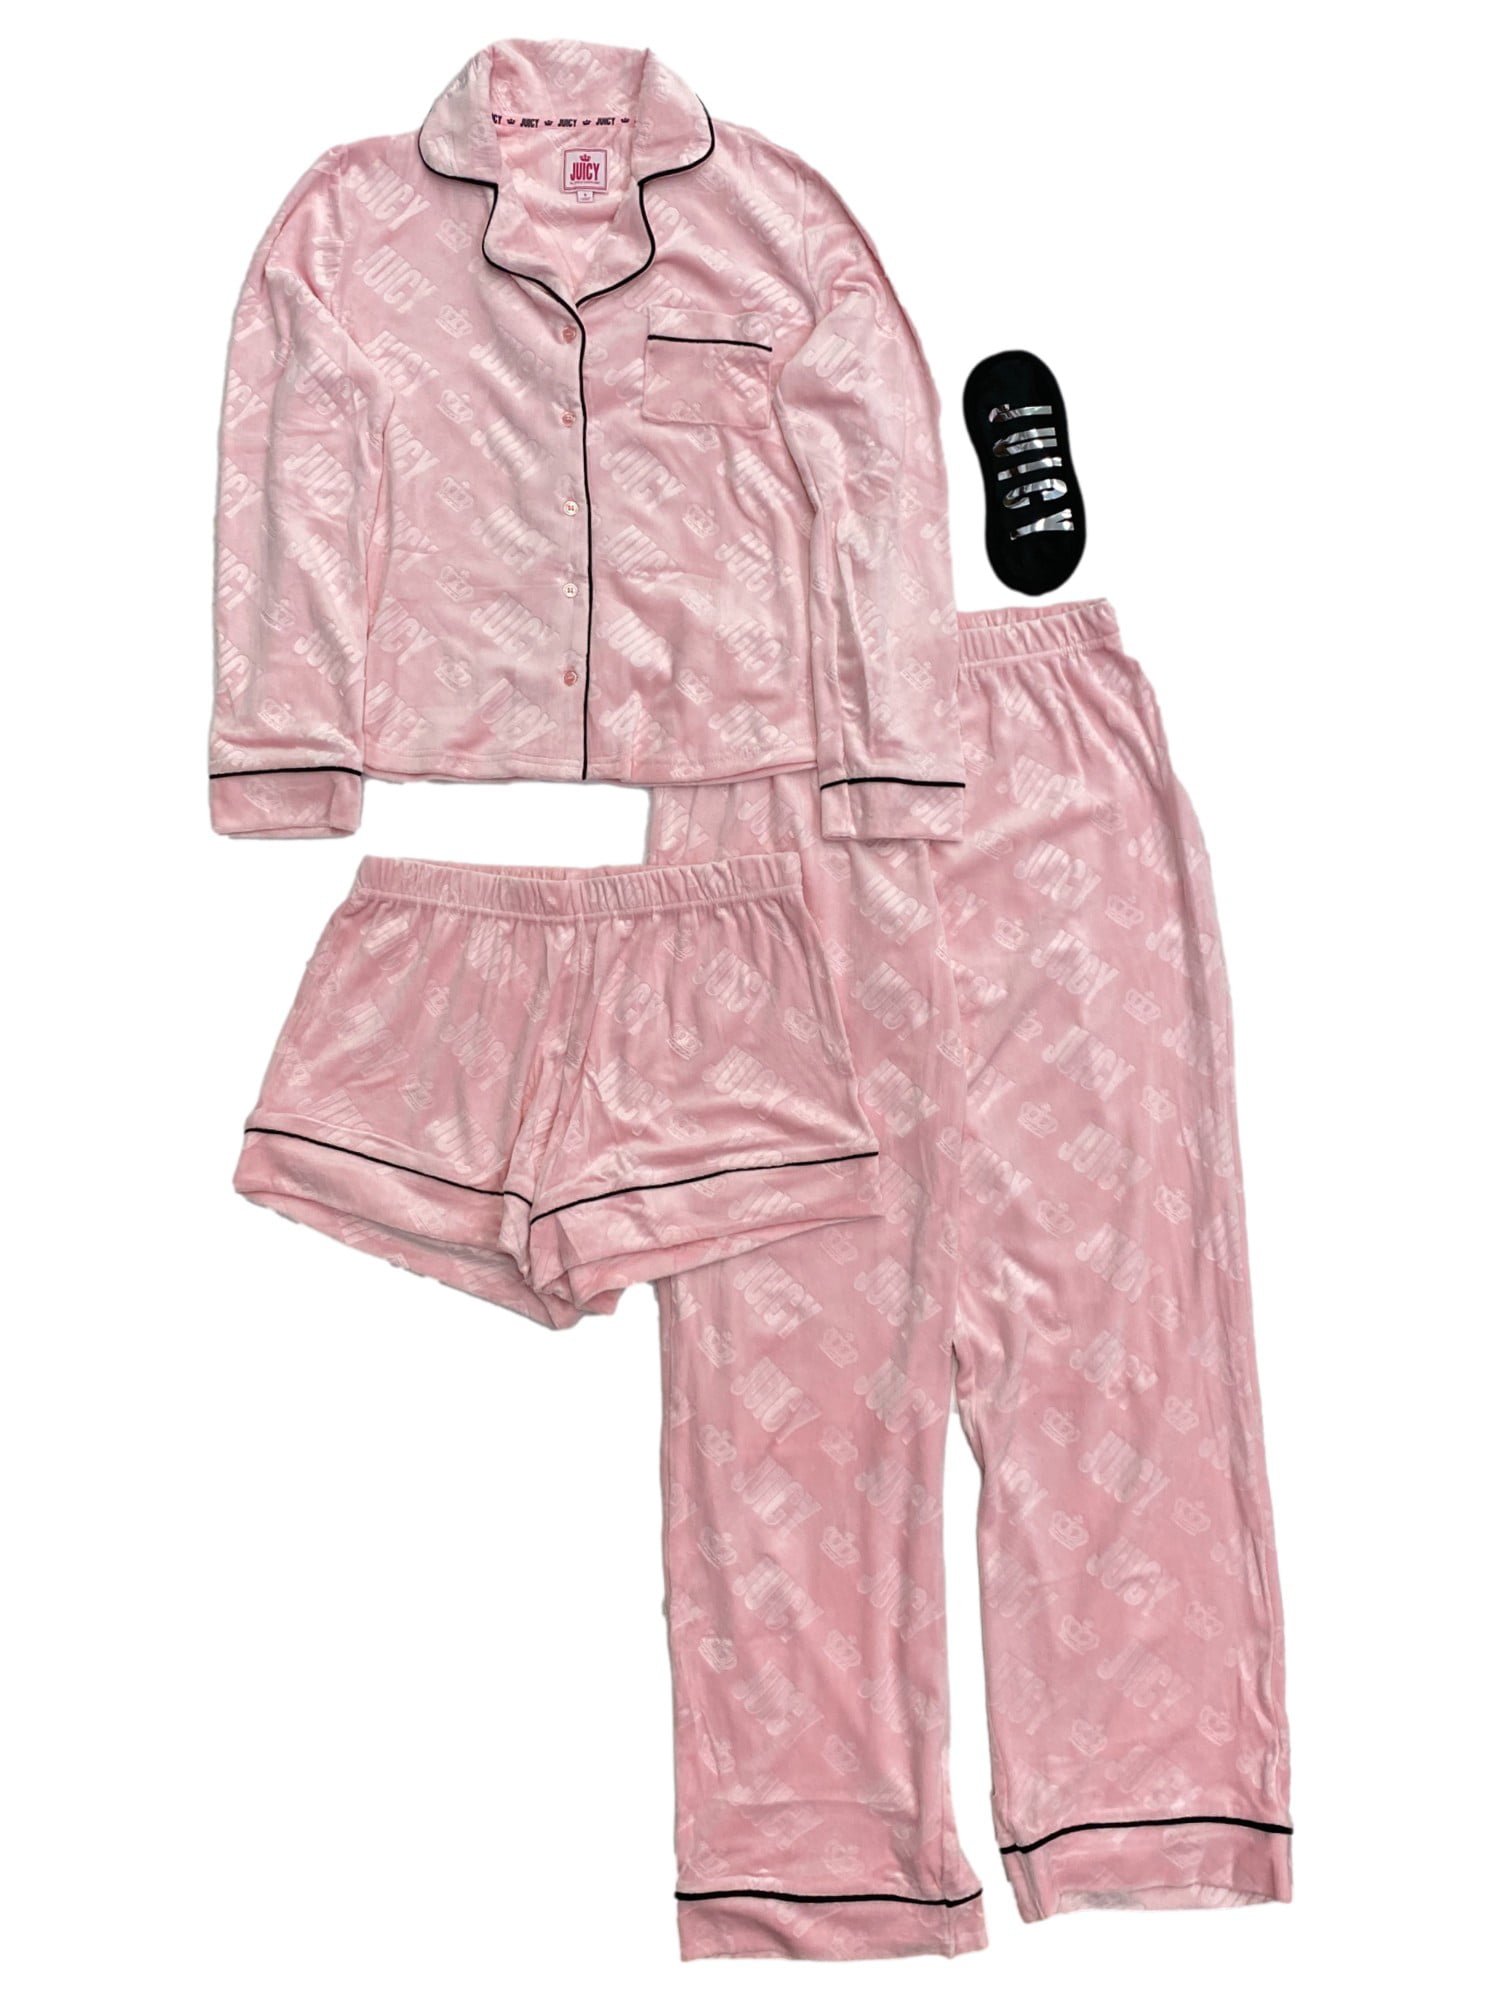 Juicy x Nelly Paquita / Paula Striped Pyjama Set